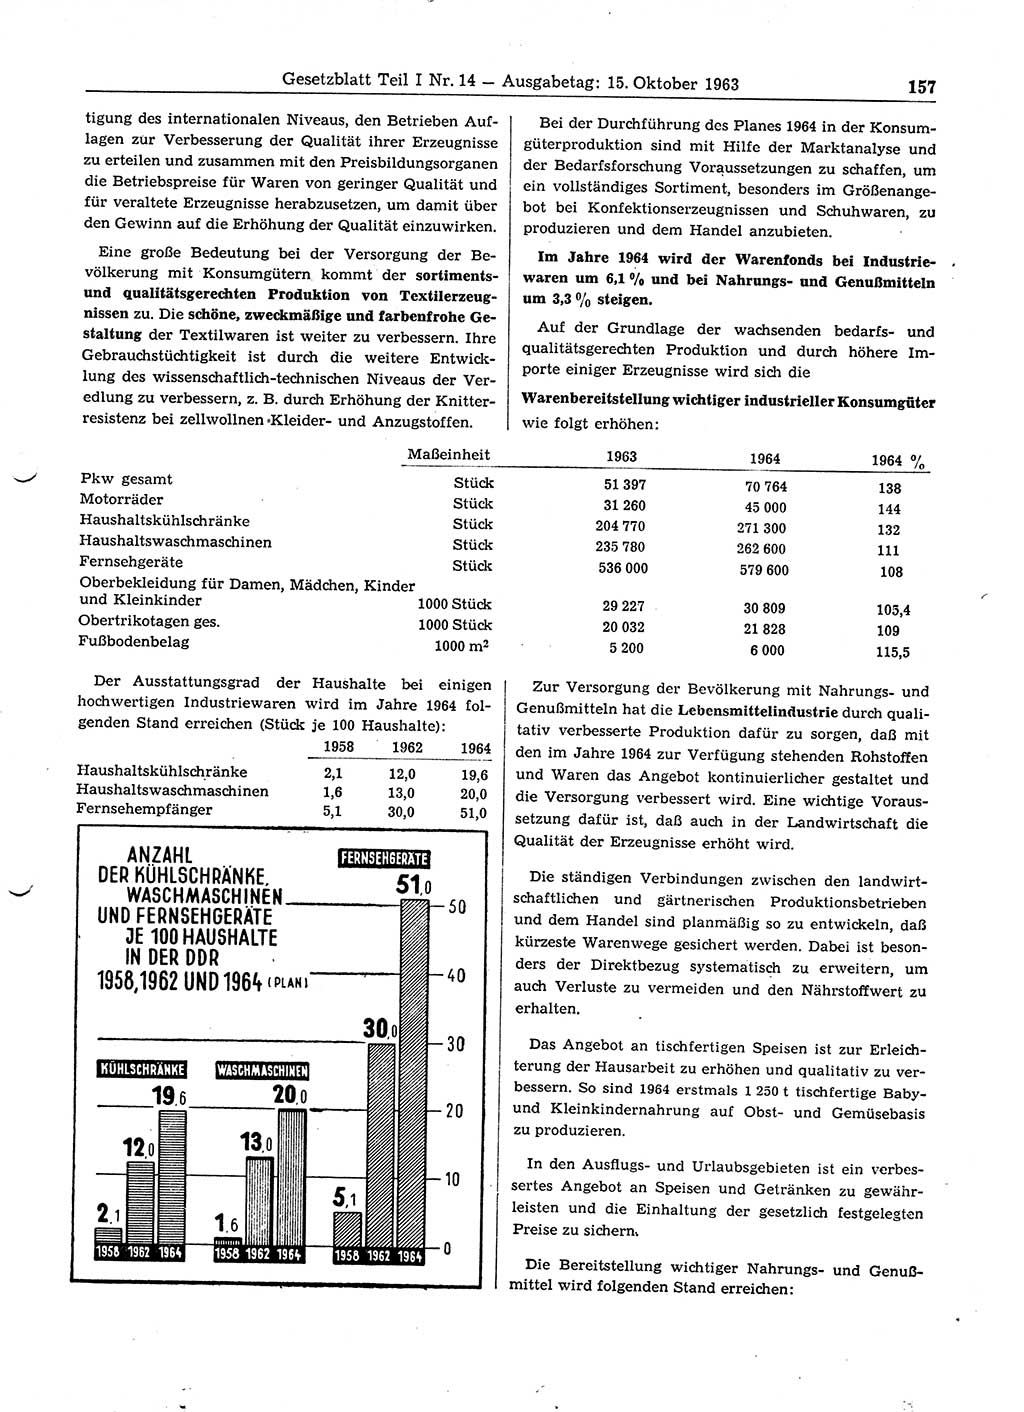 Gesetzblatt (GBl.) der Deutschen Demokratischen Republik (DDR) Teil Ⅰ 1963, Seite 157 (GBl. DDR Ⅰ 1963, S. 157)